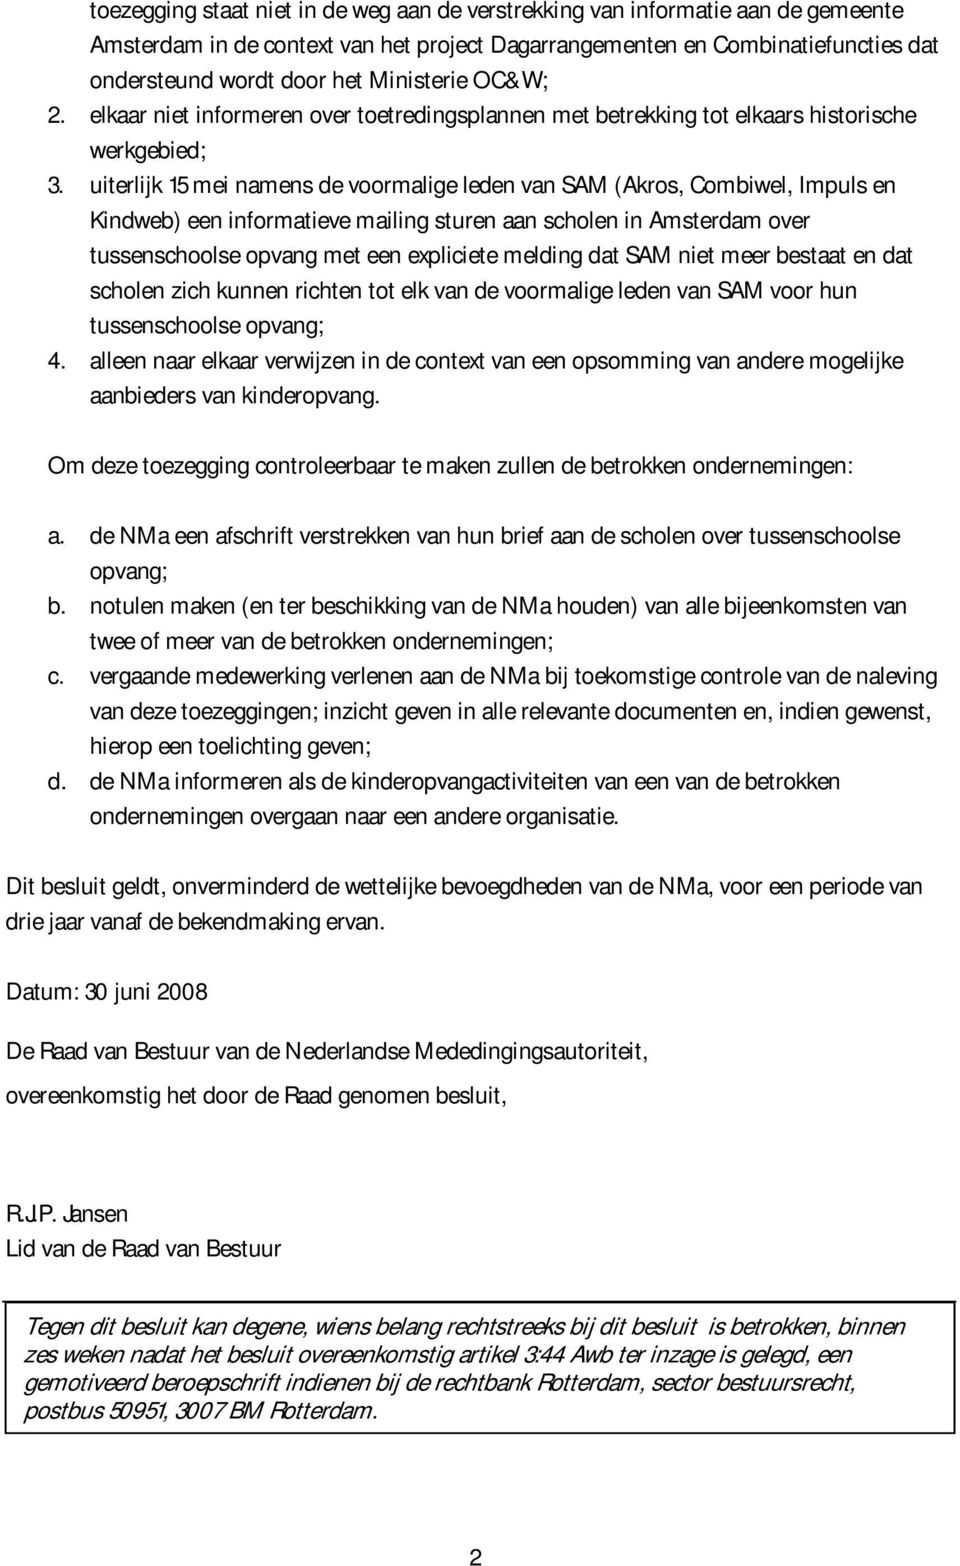 uiterlijk 15 mei namens de voormalige leden van SAM (Akros, Combiwel, Impuls en Kindweb) een informatieve mailing sturen aan scholen in Amsterdam over tussenschoolse opvang met een expliciete melding